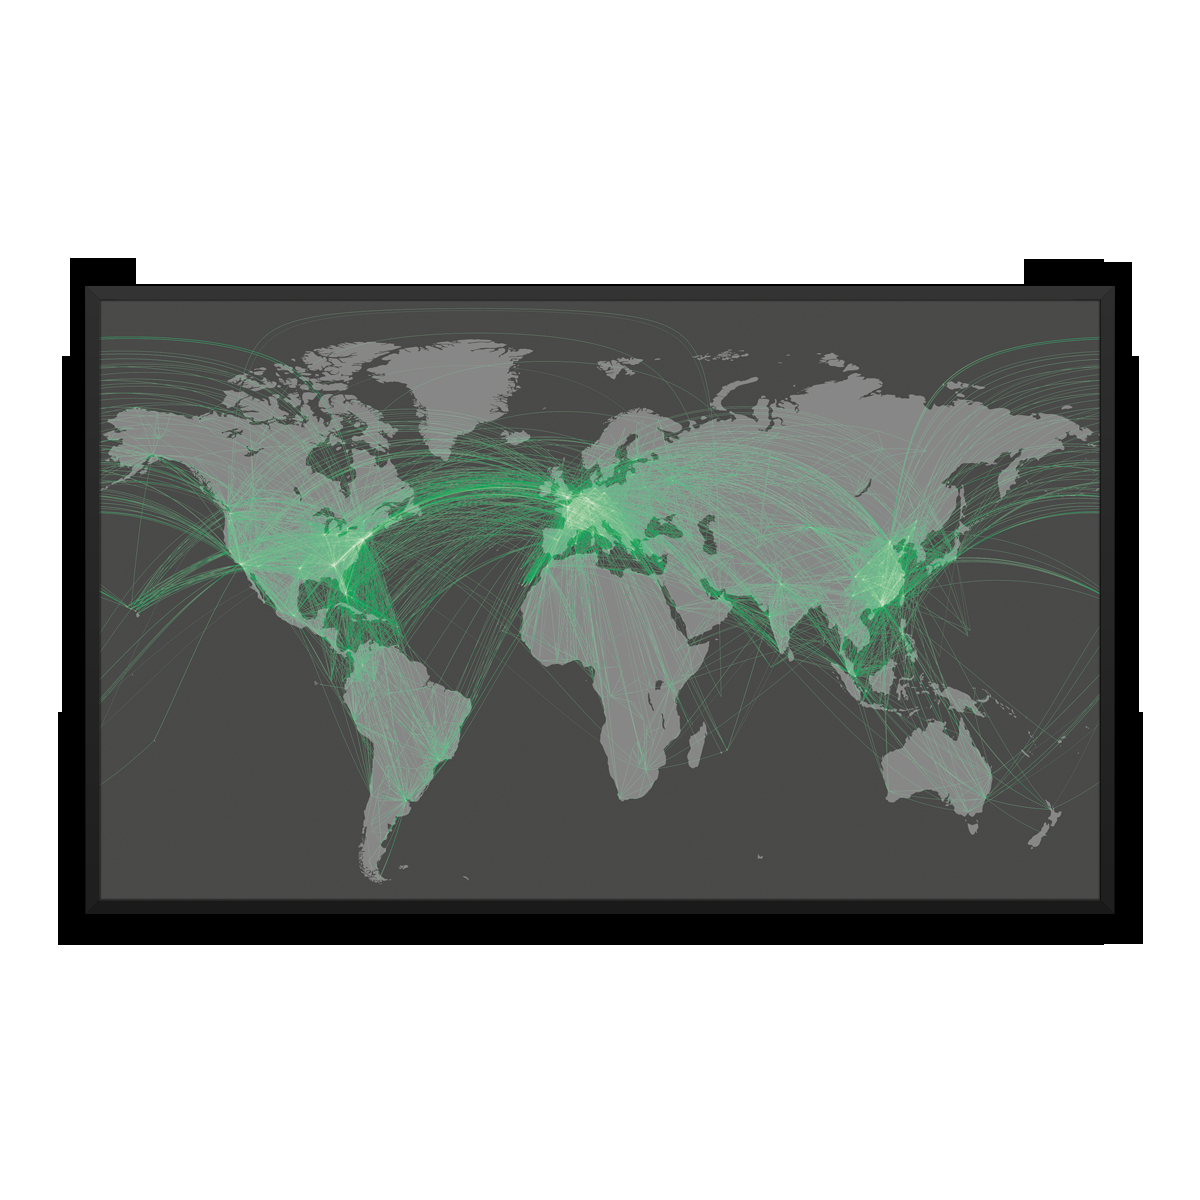 Maailman ilmailu - ilmailu - vihreä / vaahtomuovilevy / musta alumiinikehys / 100×60 cm